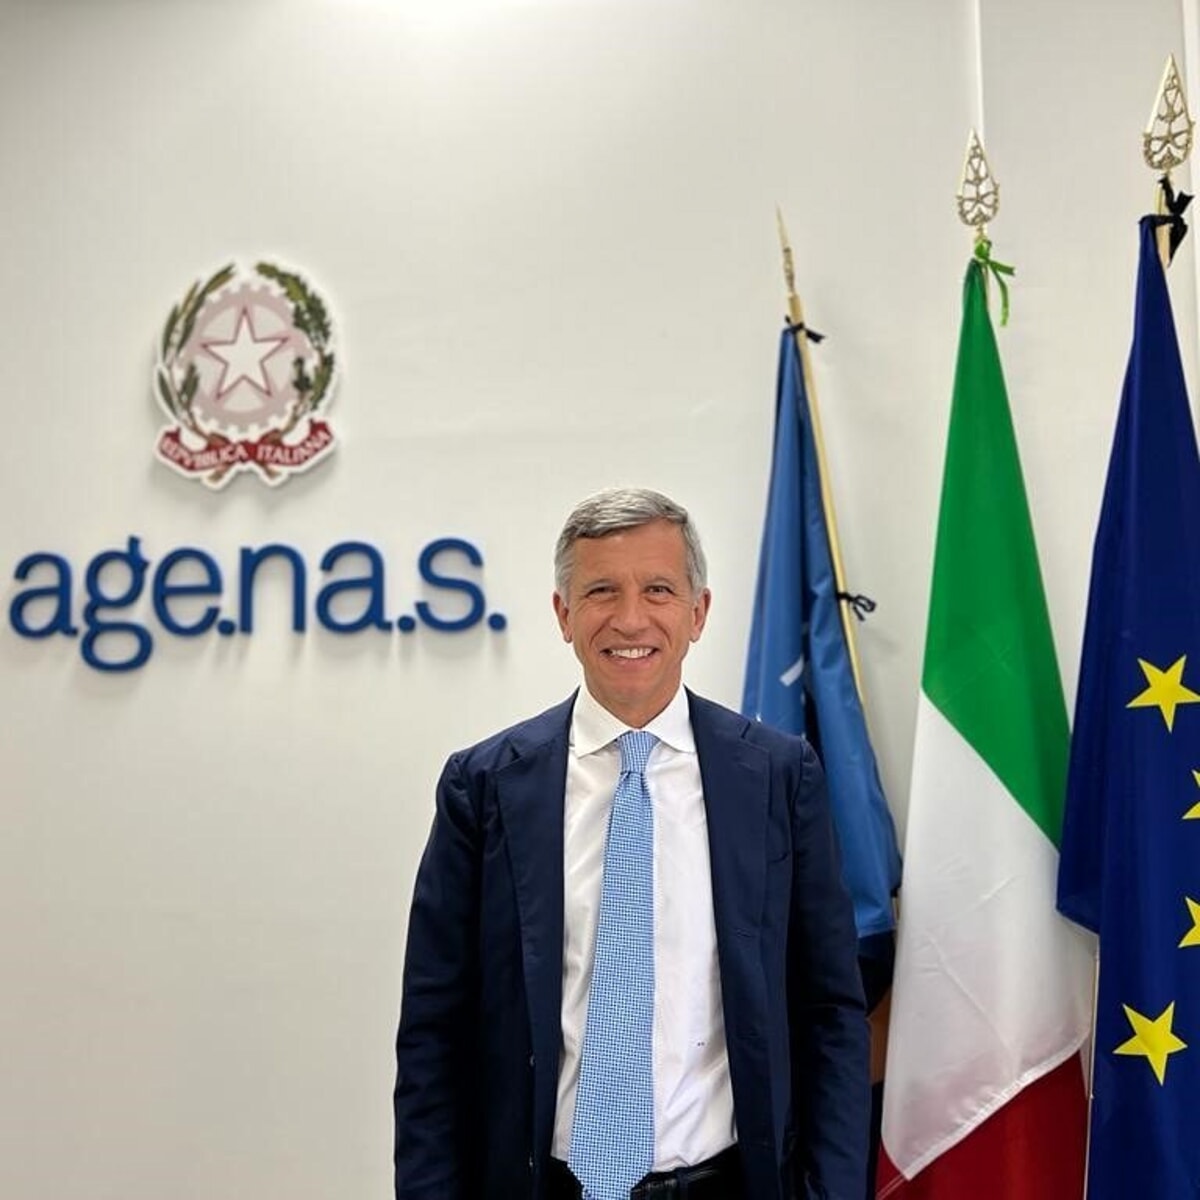 La decisione del Consiglio dei Ministri: Enrico Coscioni sospeso dall’Agenas